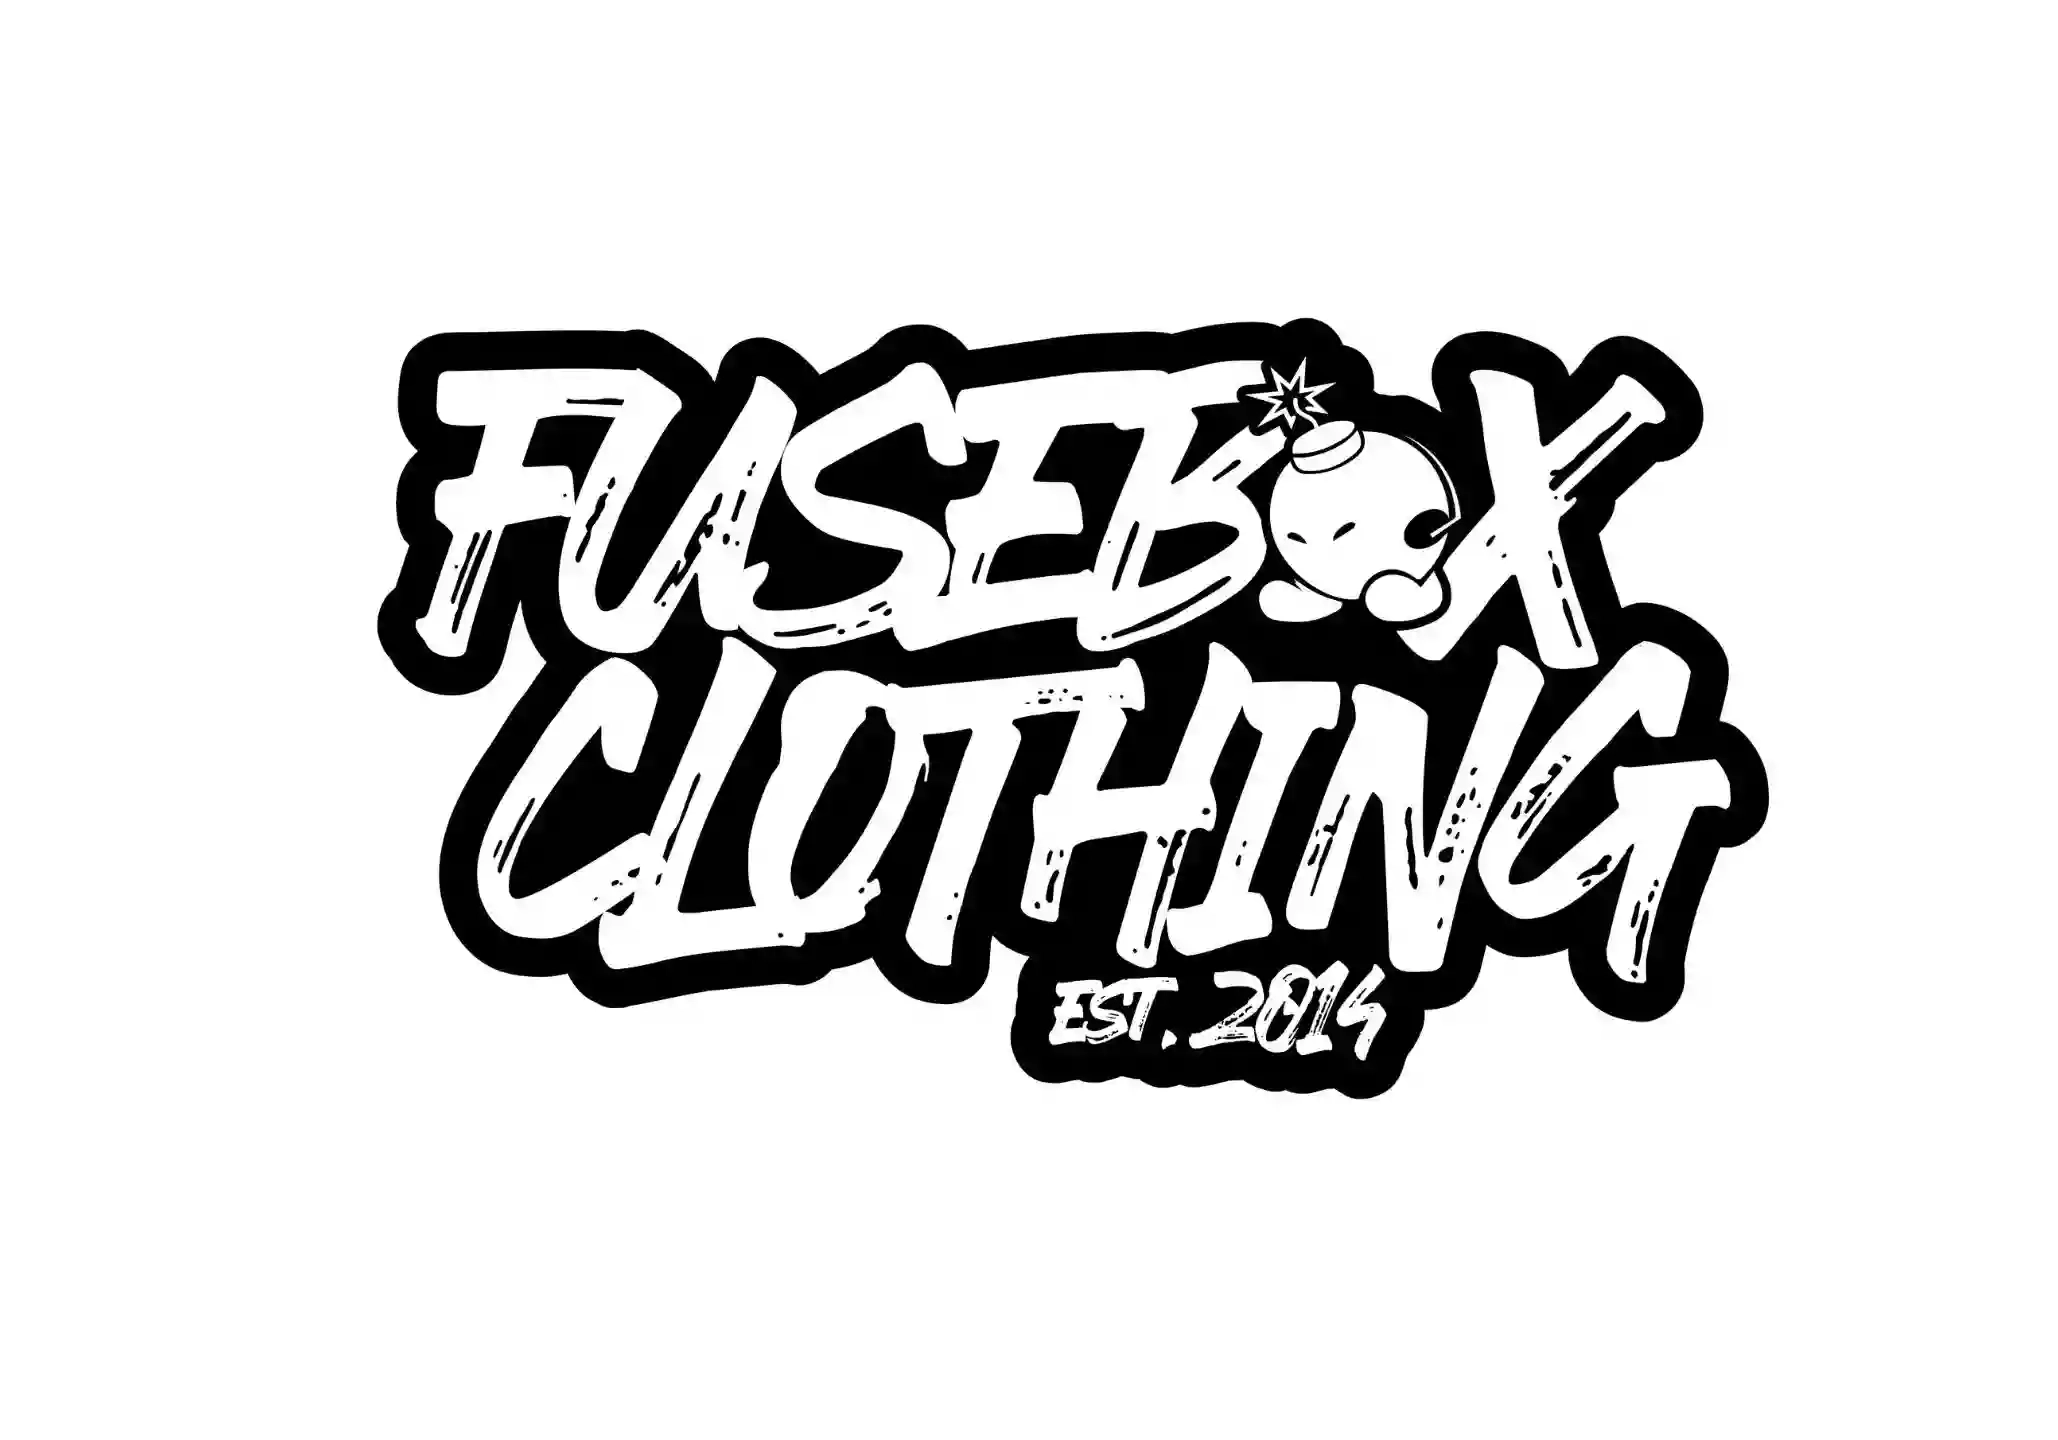 fuse box clothing